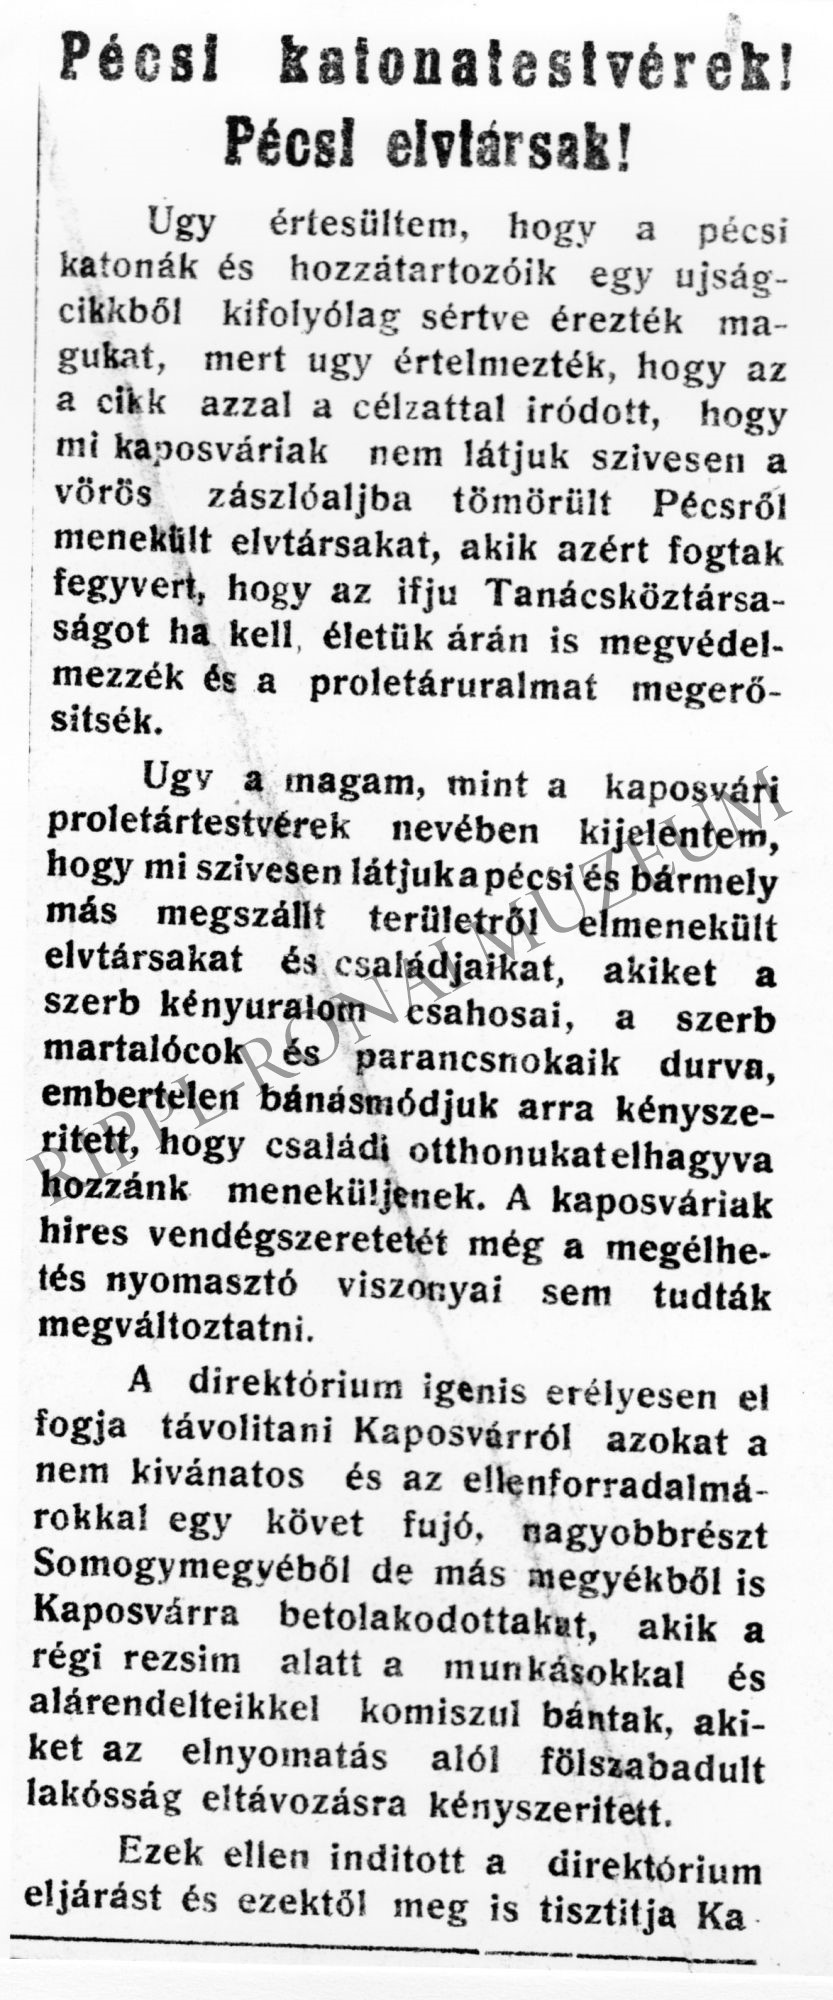 újságcikk: " Pécsi katonatestvérek! Pécsi elvtársak!" (Rippl-Rónai Múzeum CC BY-NC-SA)